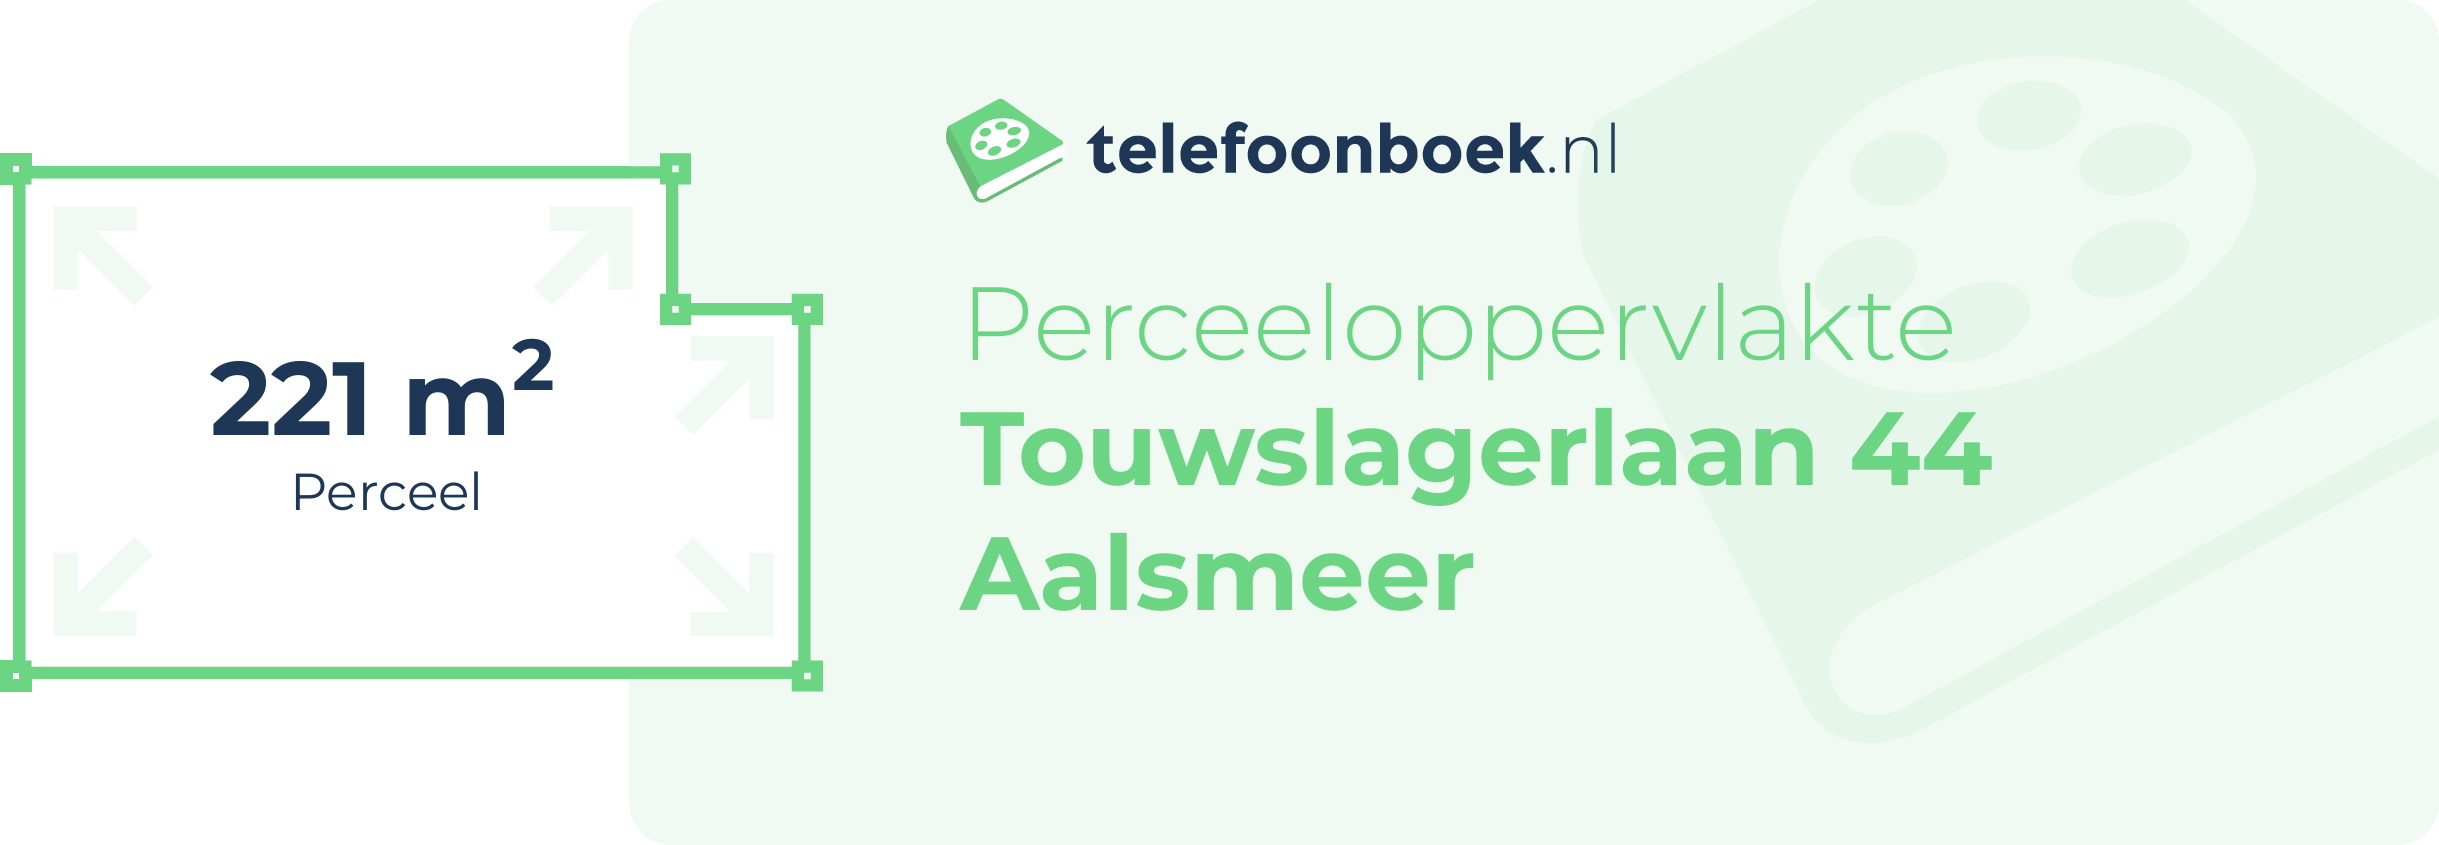 Perceeloppervlakte Touwslagerlaan 44 Aalsmeer